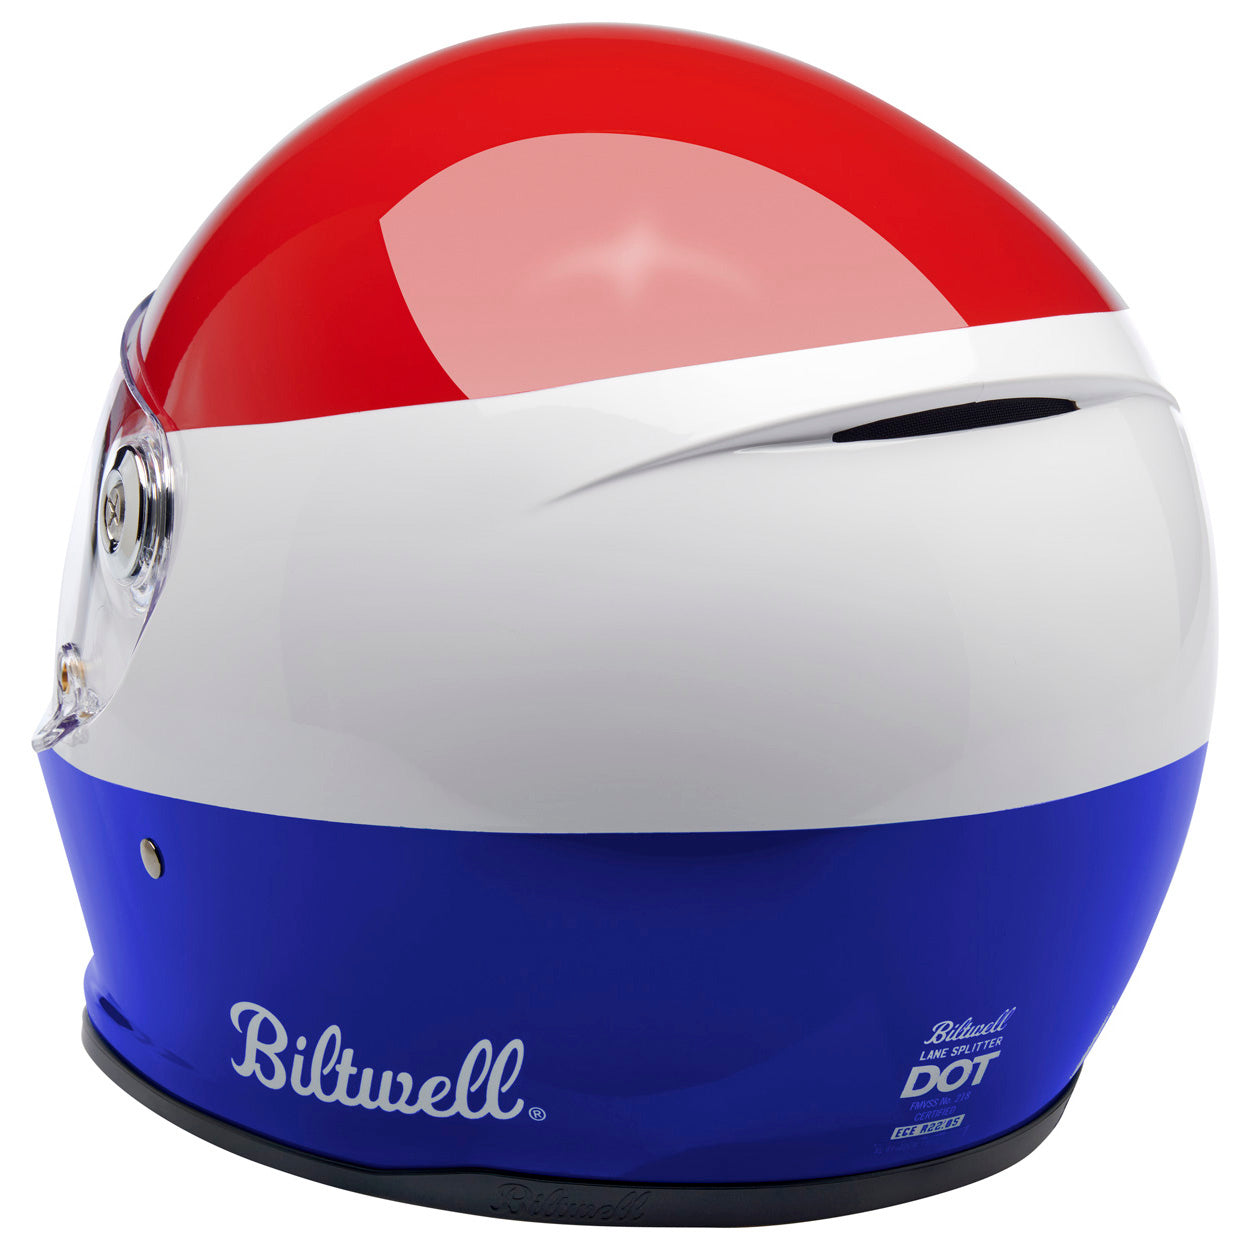 Lane Splitter ECE R22.05 Helmet - Podium Gloss Red/White/Blue